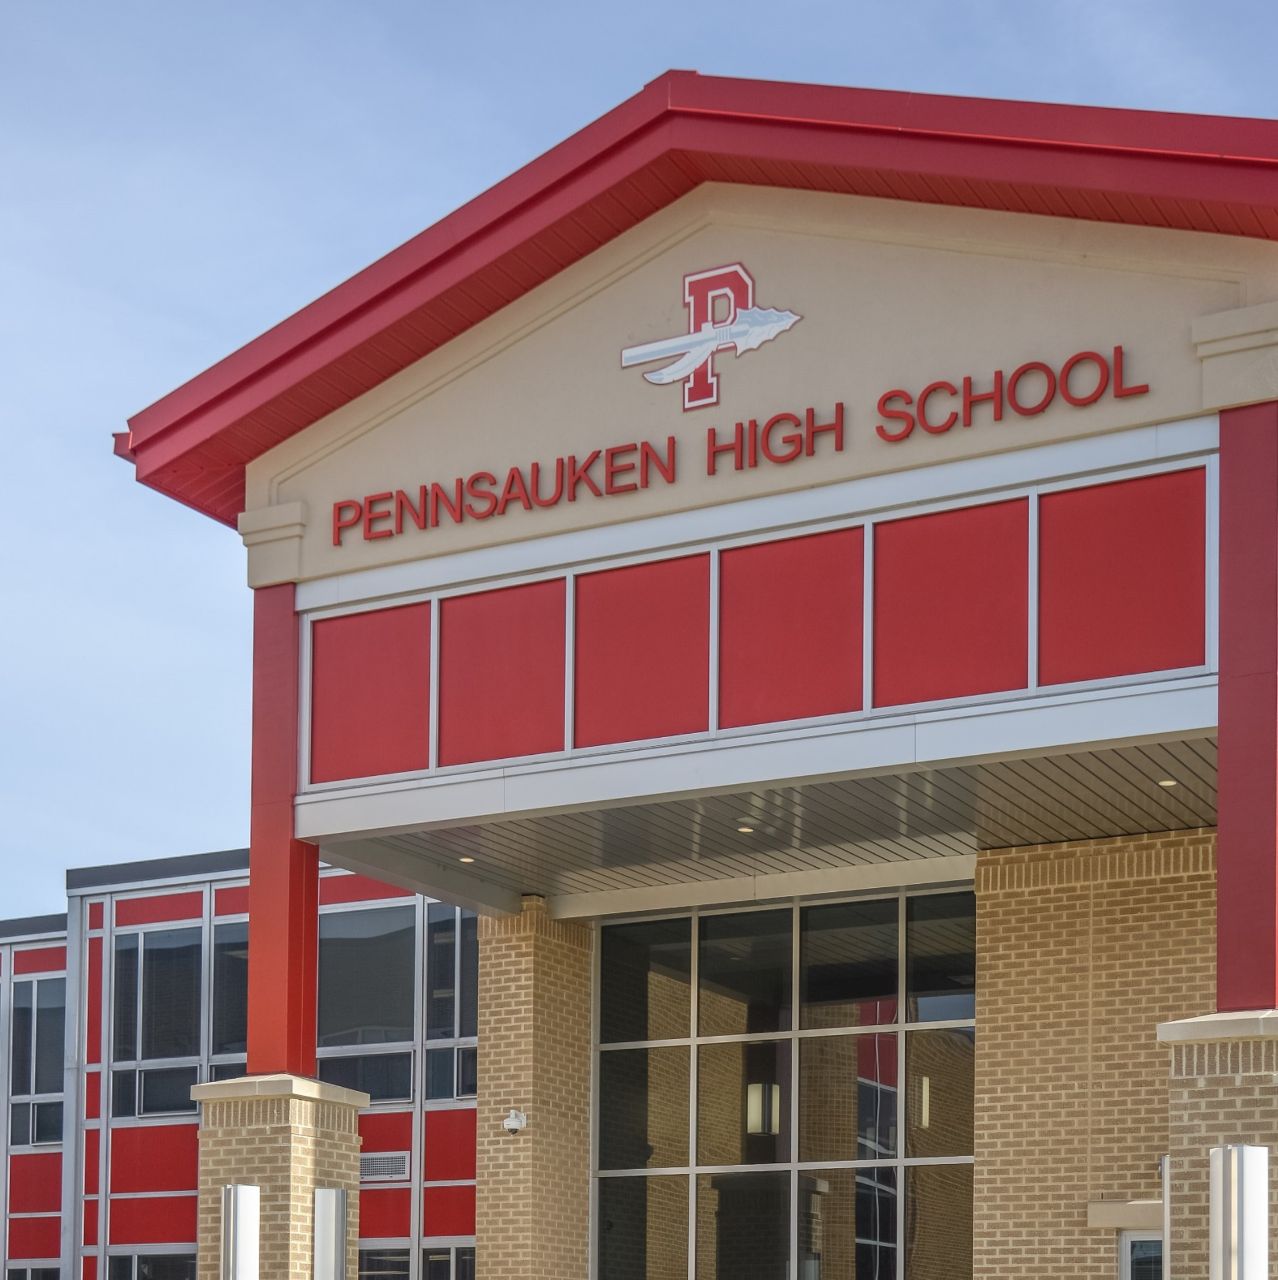 Pennsauken high school